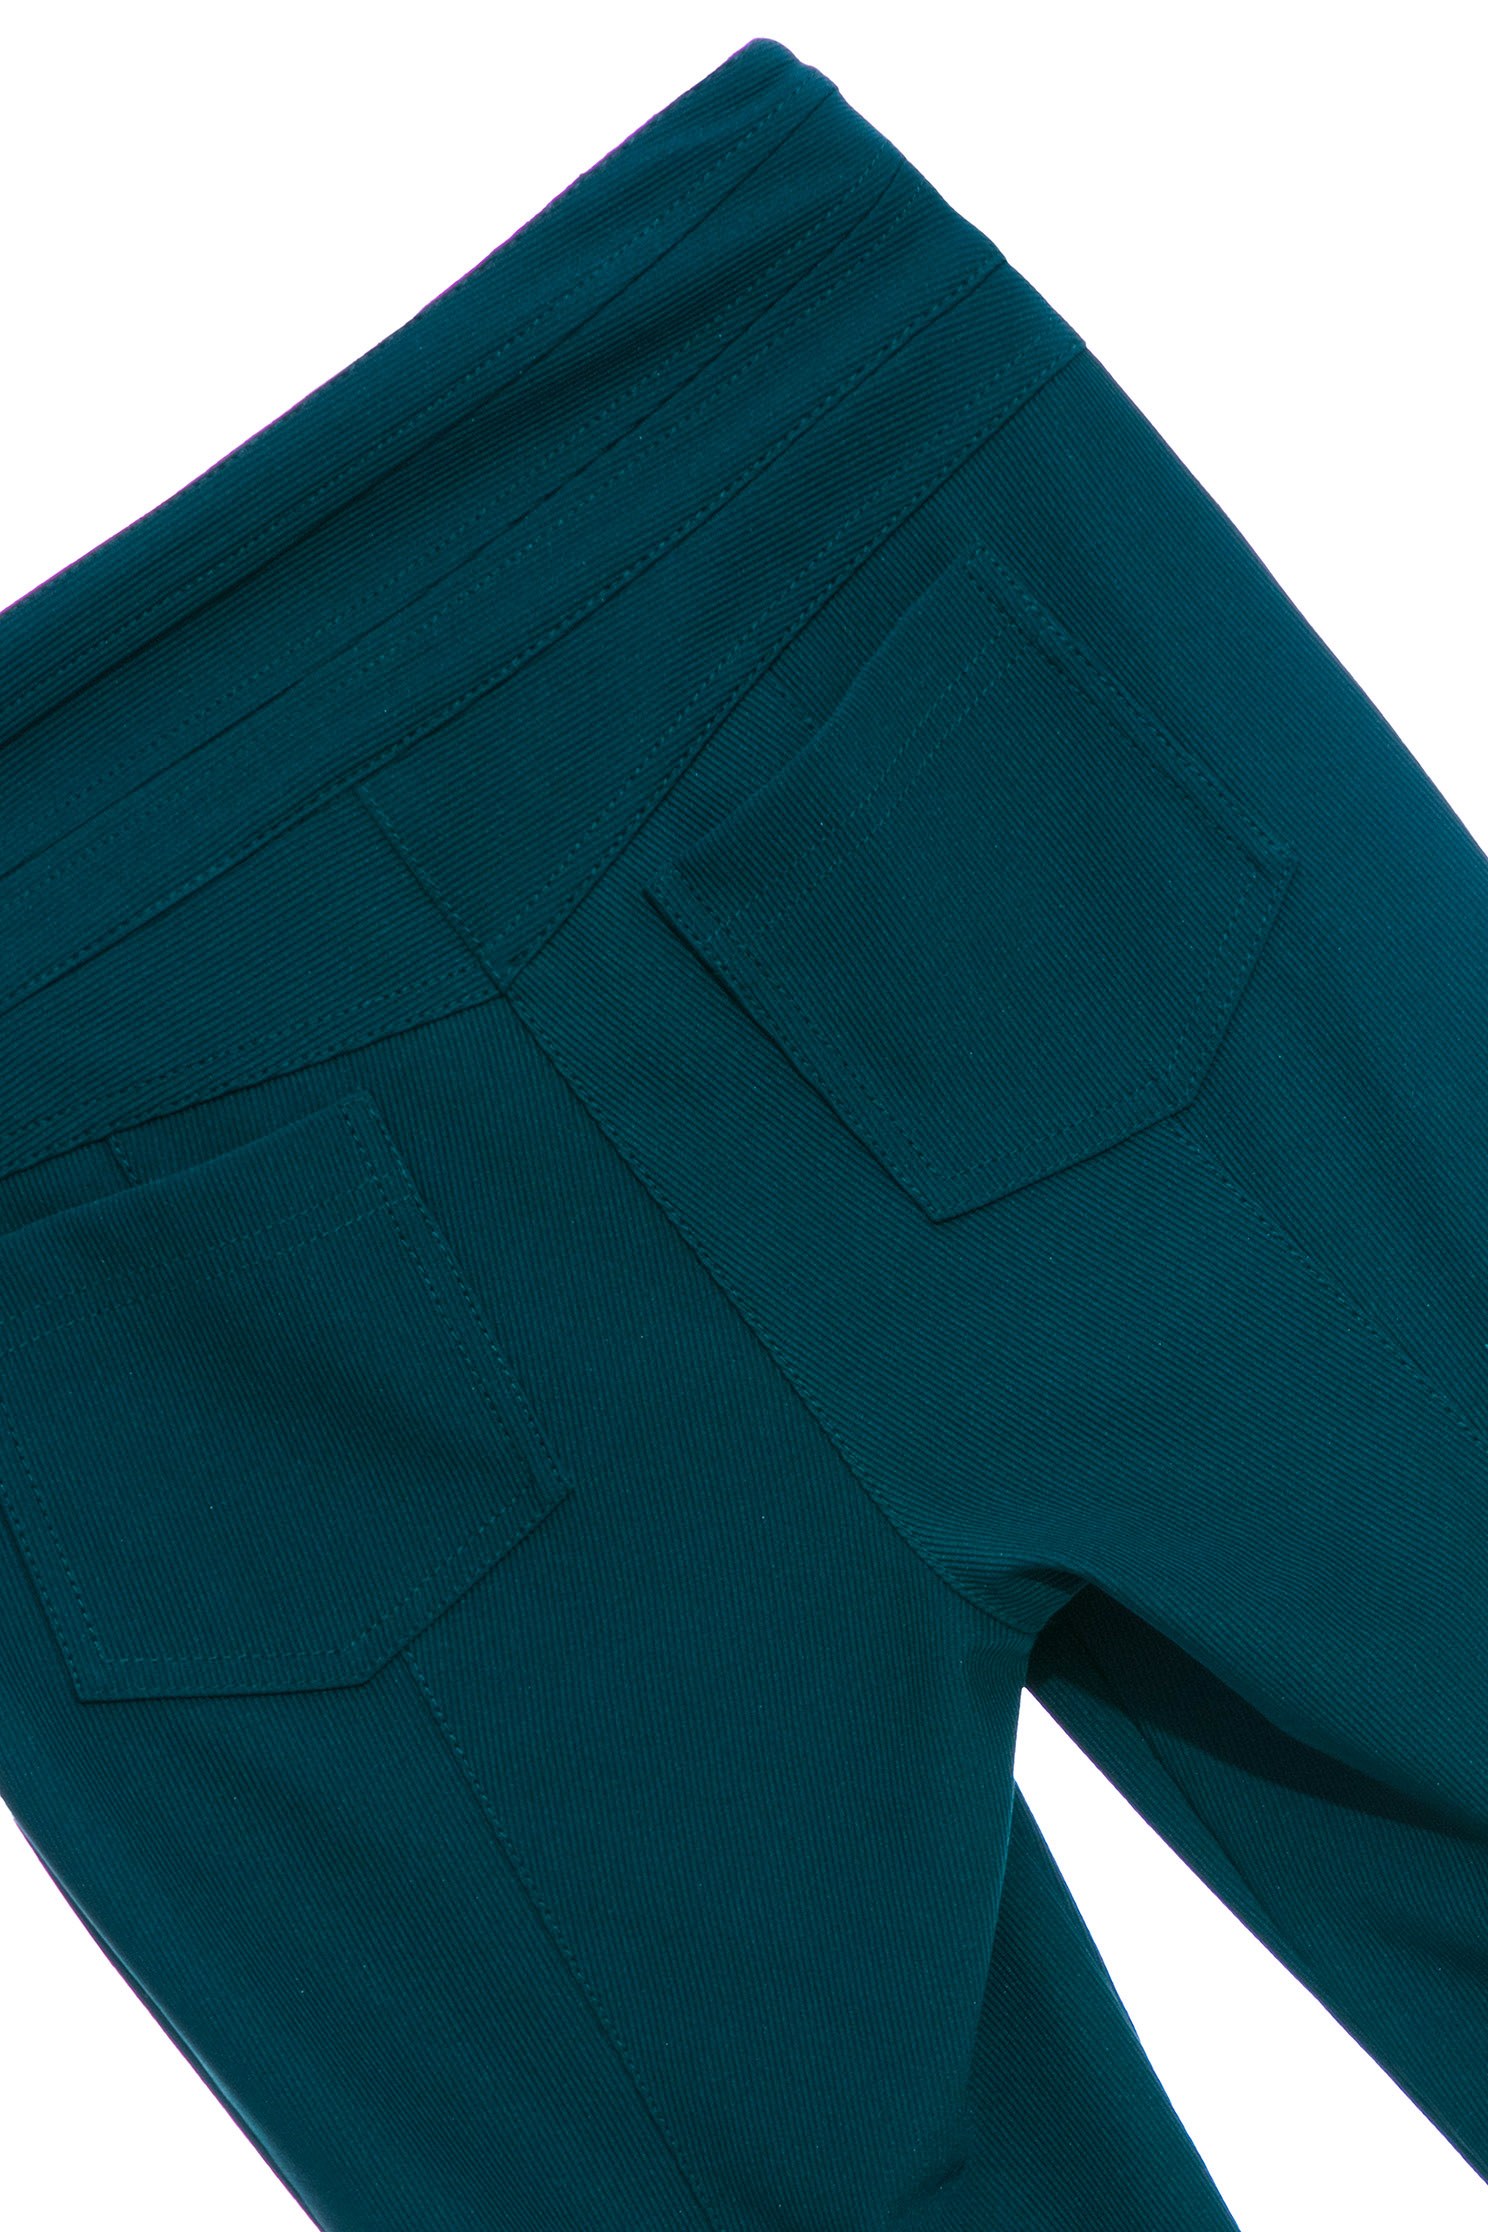 銅綠色喇叭長褲,綠色 長褲,中高腰 綠色,細條紋 綠色銅綠色喇叭長褲,喇叭褲,春夏穿搭,條紋,褲子,西裝褲,長褲